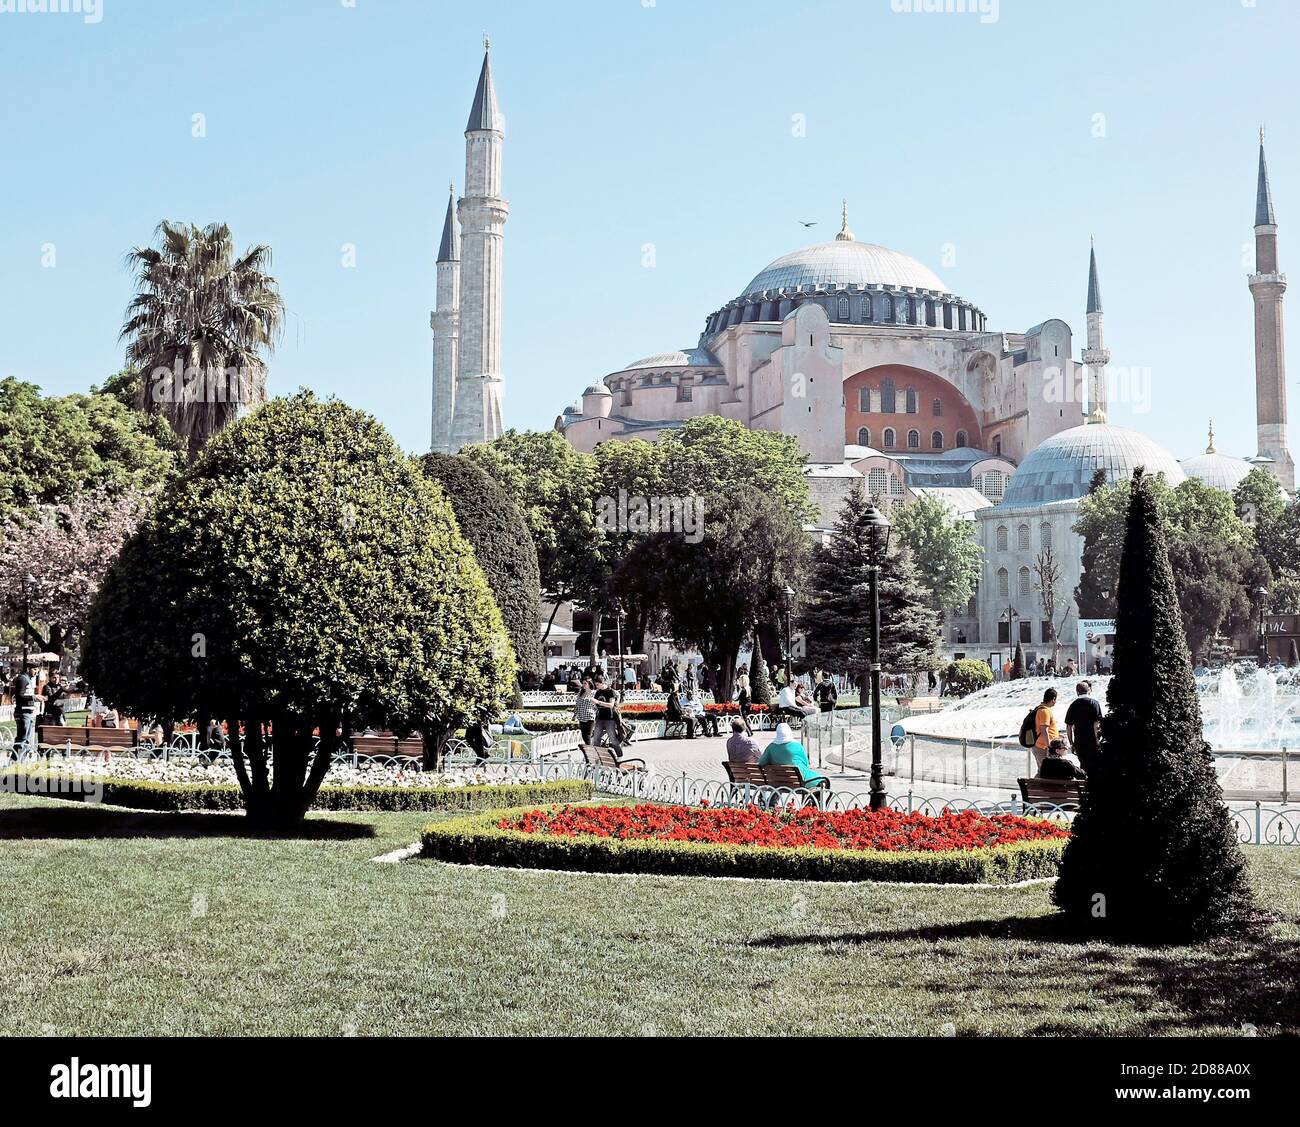 La Grande Mosquée Sainte-Sophie, anciennement l'église Sainte-Sophie, à Sultanahmet à Istanbul, en Turquie, est revenue à une mosquée en fonctionnement en 2020. Banque D'Images